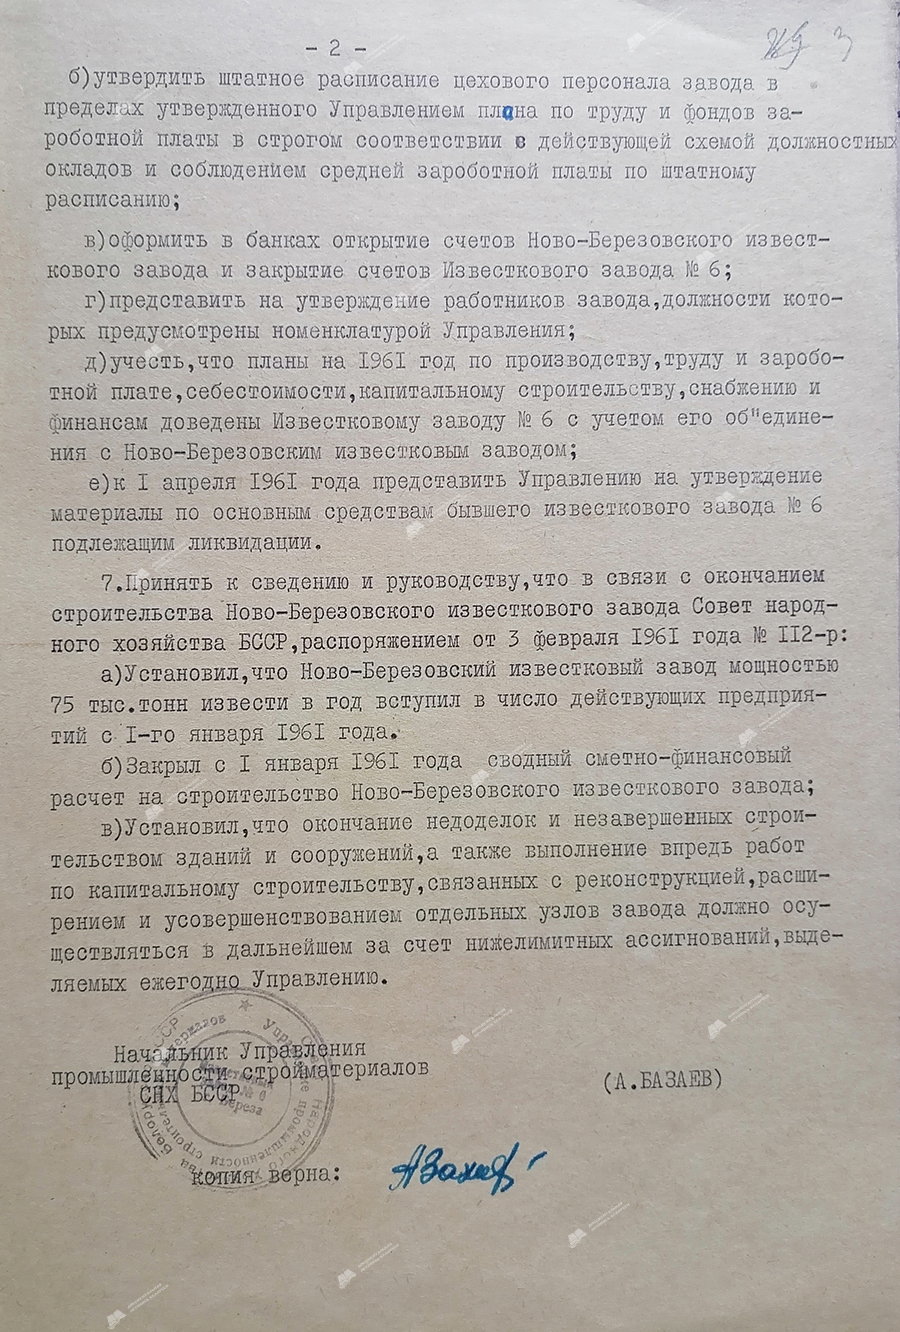 Verordnung Nr. 12 der Abteilung für Baustoffindustrie des Rates für Volkswirtschaft der BSSR über den Zusammenschluss von Kalkfabriken und die Zuweisung des Namens «Novo-Berezovsky Kalkwerk»-с. 1